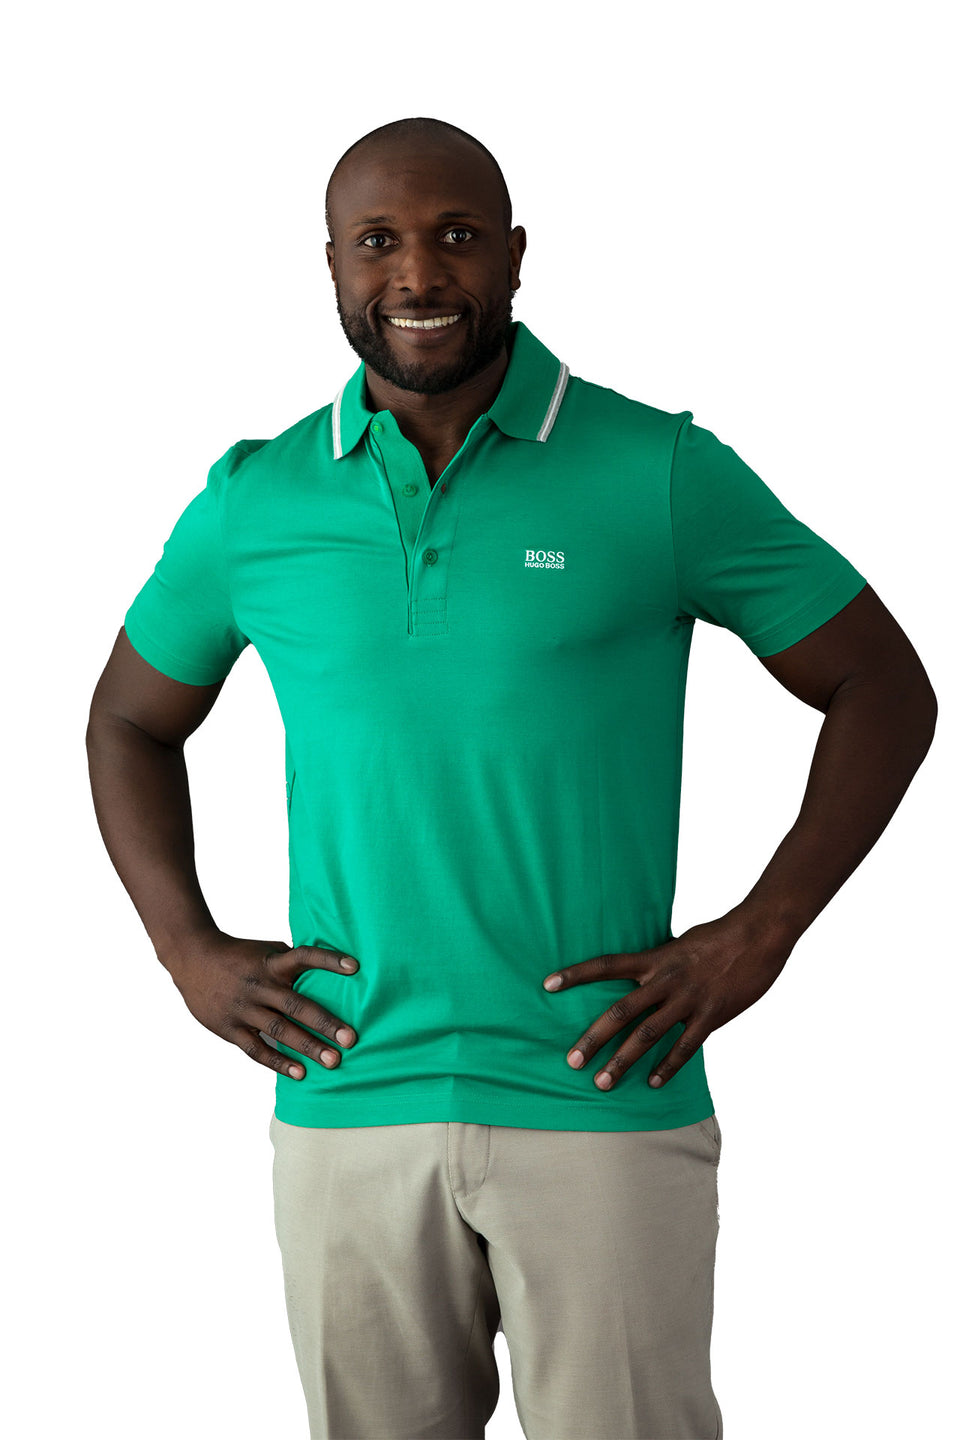 Hugo Boss Light Green Polo Shirt - Camden Connaught